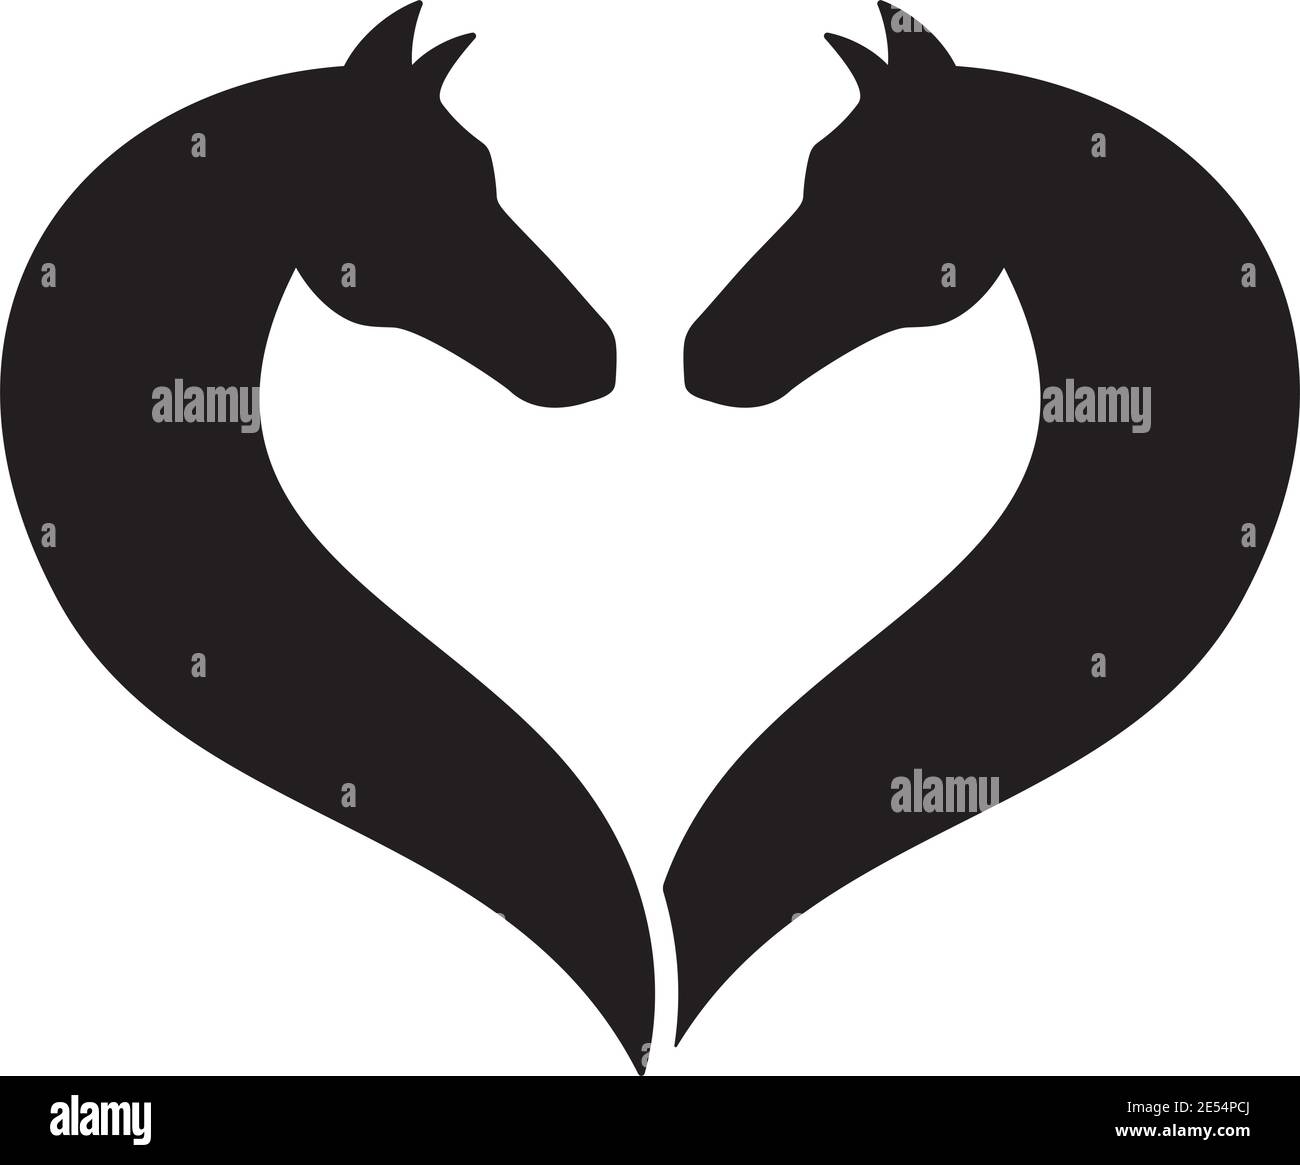 Due sagome a testa di cavallo rivolte l'una verso l'altra, formando un'illustrazione vettoriale a forma di cuore Illustrazione Vettoriale